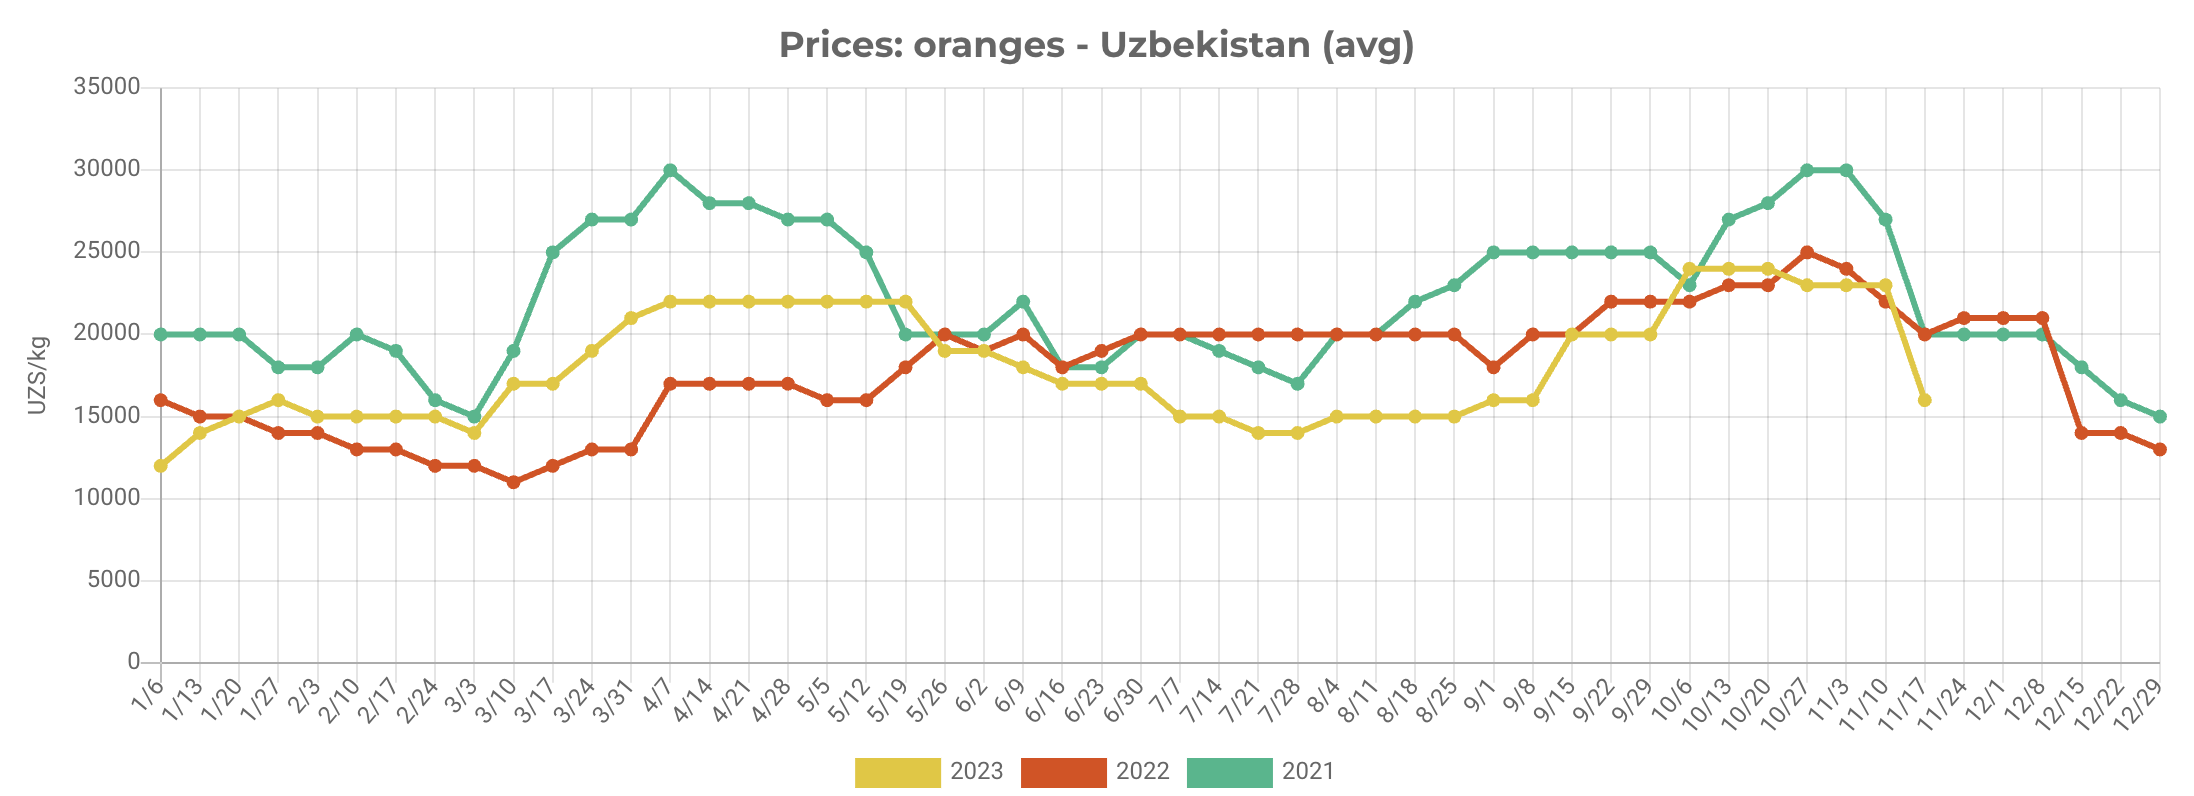 Oranges prices drop in Uzbekistan